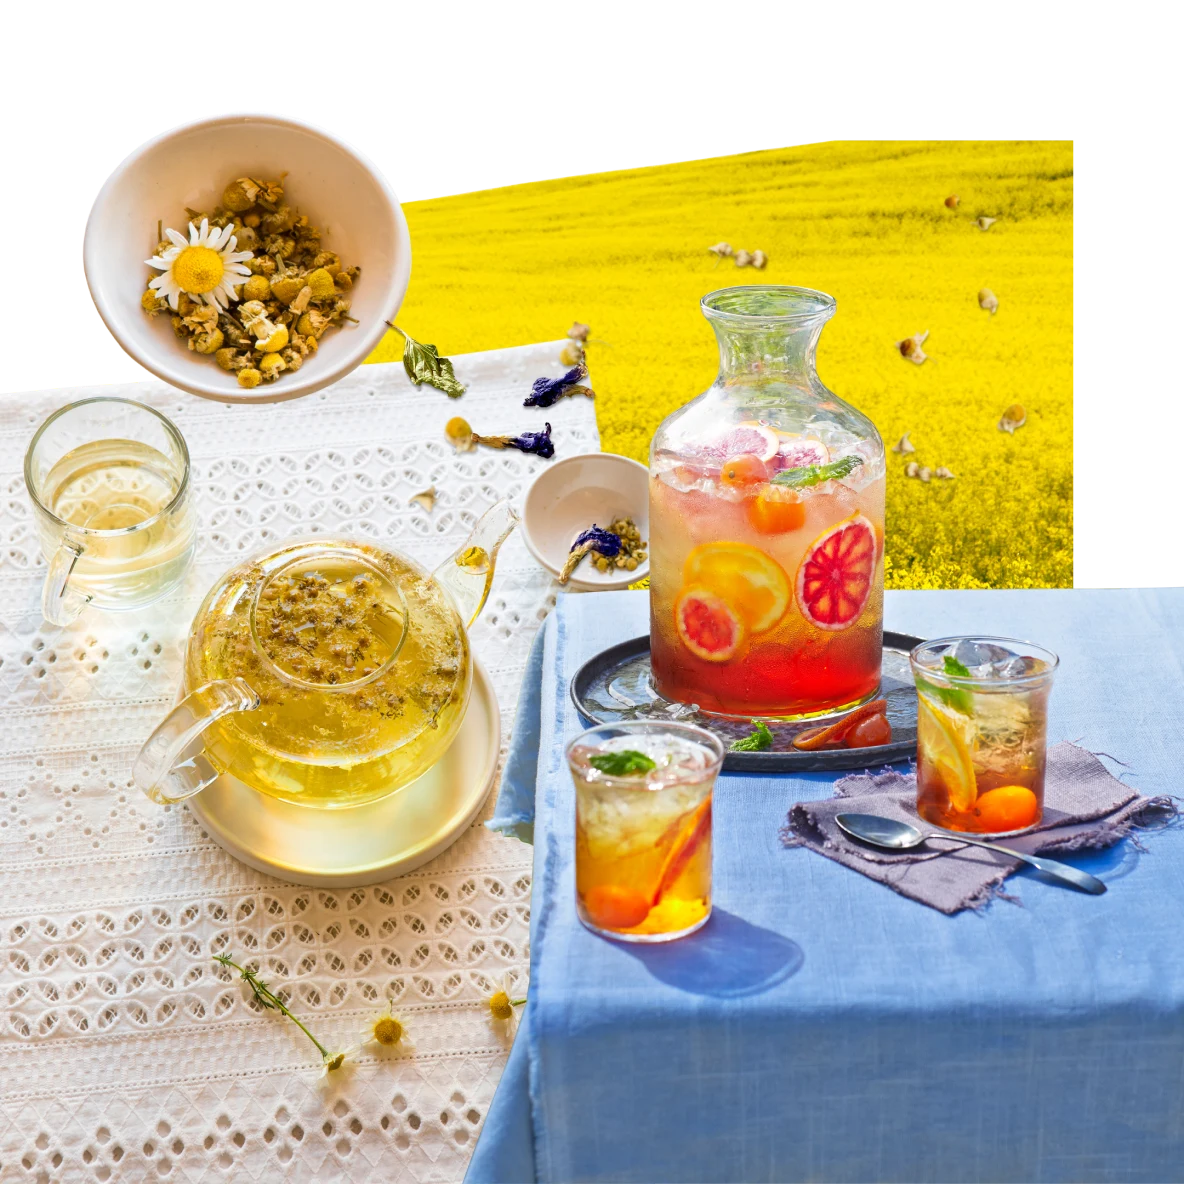 Colagem de itens relacionados ao tema chá. Garrafa de chá gelado com frutas cítricas em uma mesa com toalha azul e dois copos cheios de chá gelado. Bule de vidro cheio de chá ao lado de uma xícara com chá e um pequeno pote com folhas de chá. Campo de flores amarelas ao fundo.